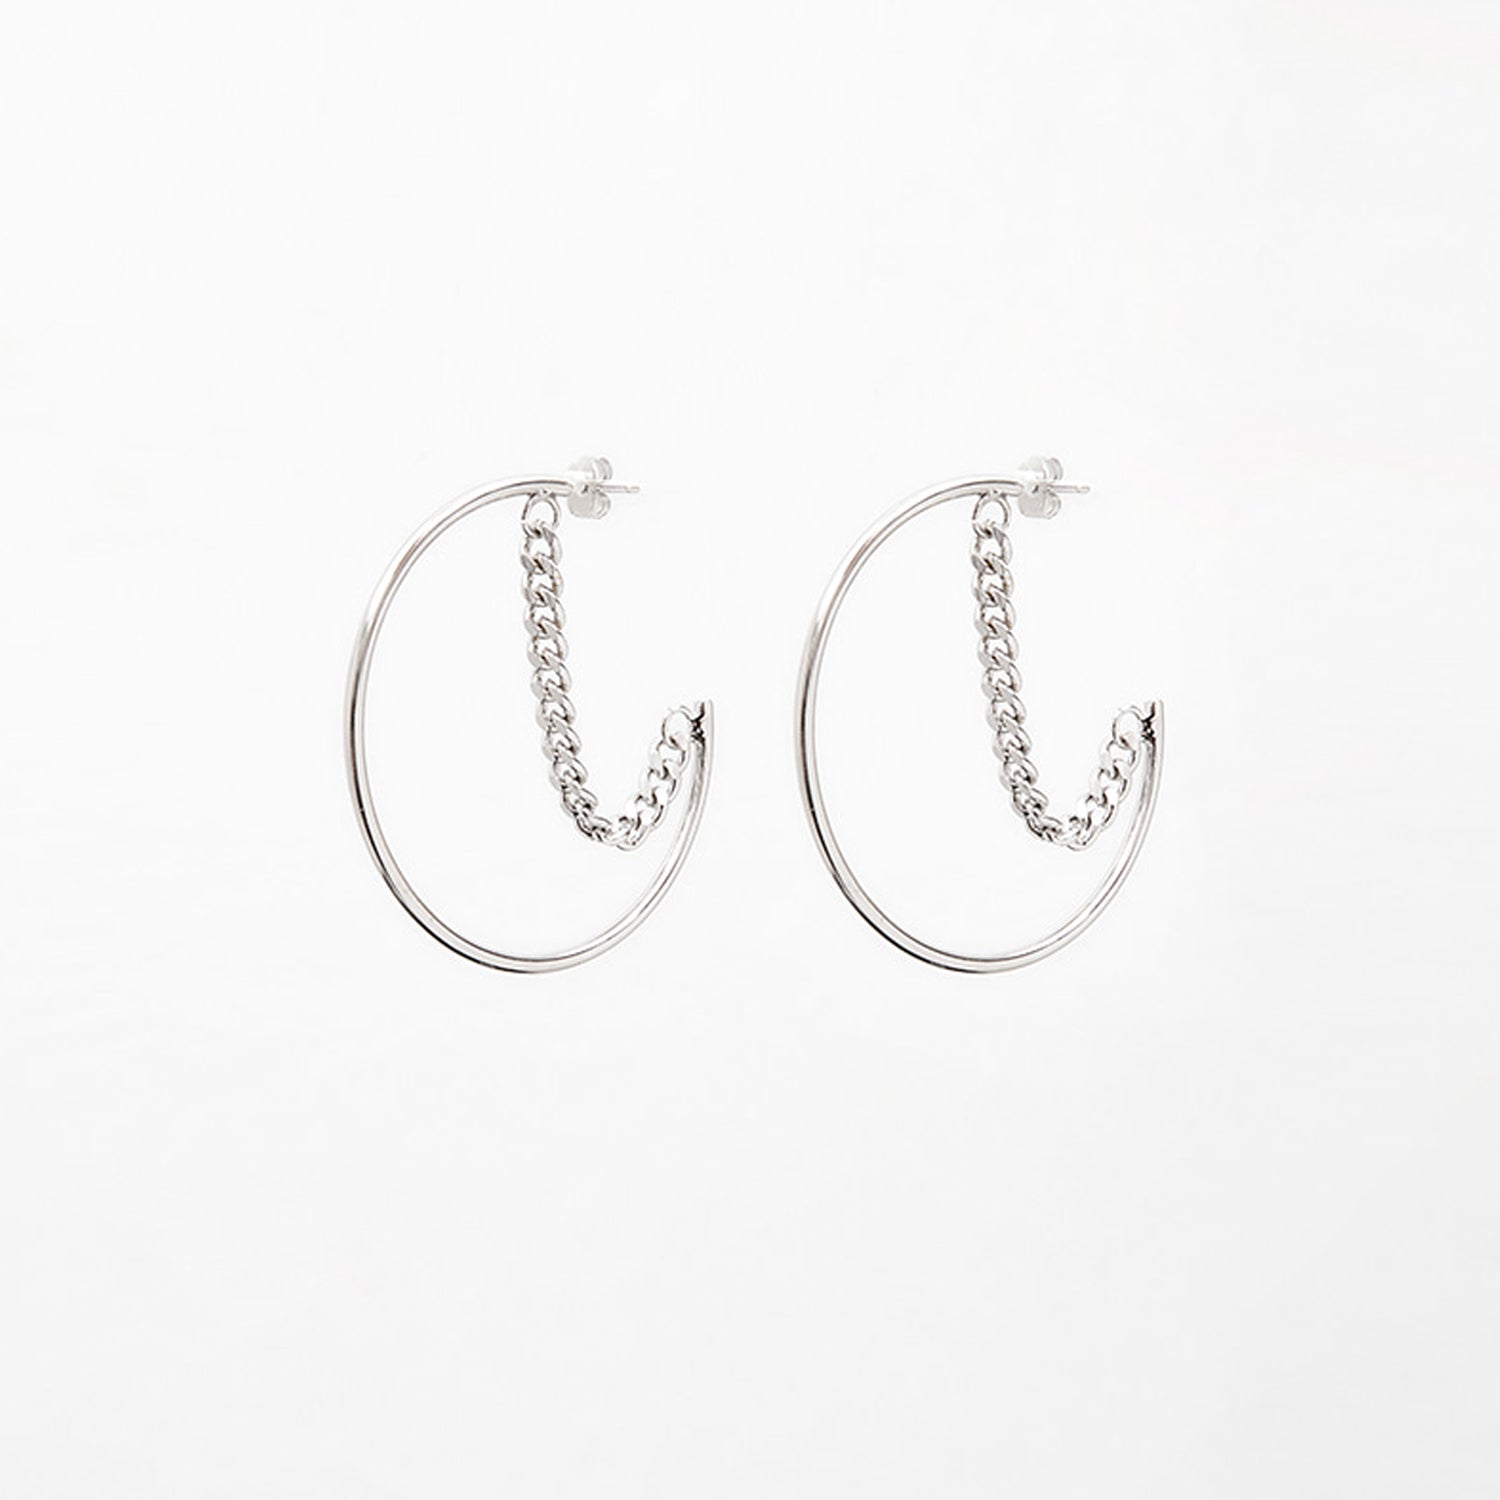 Half Moon Layered Chain Ring Earrings